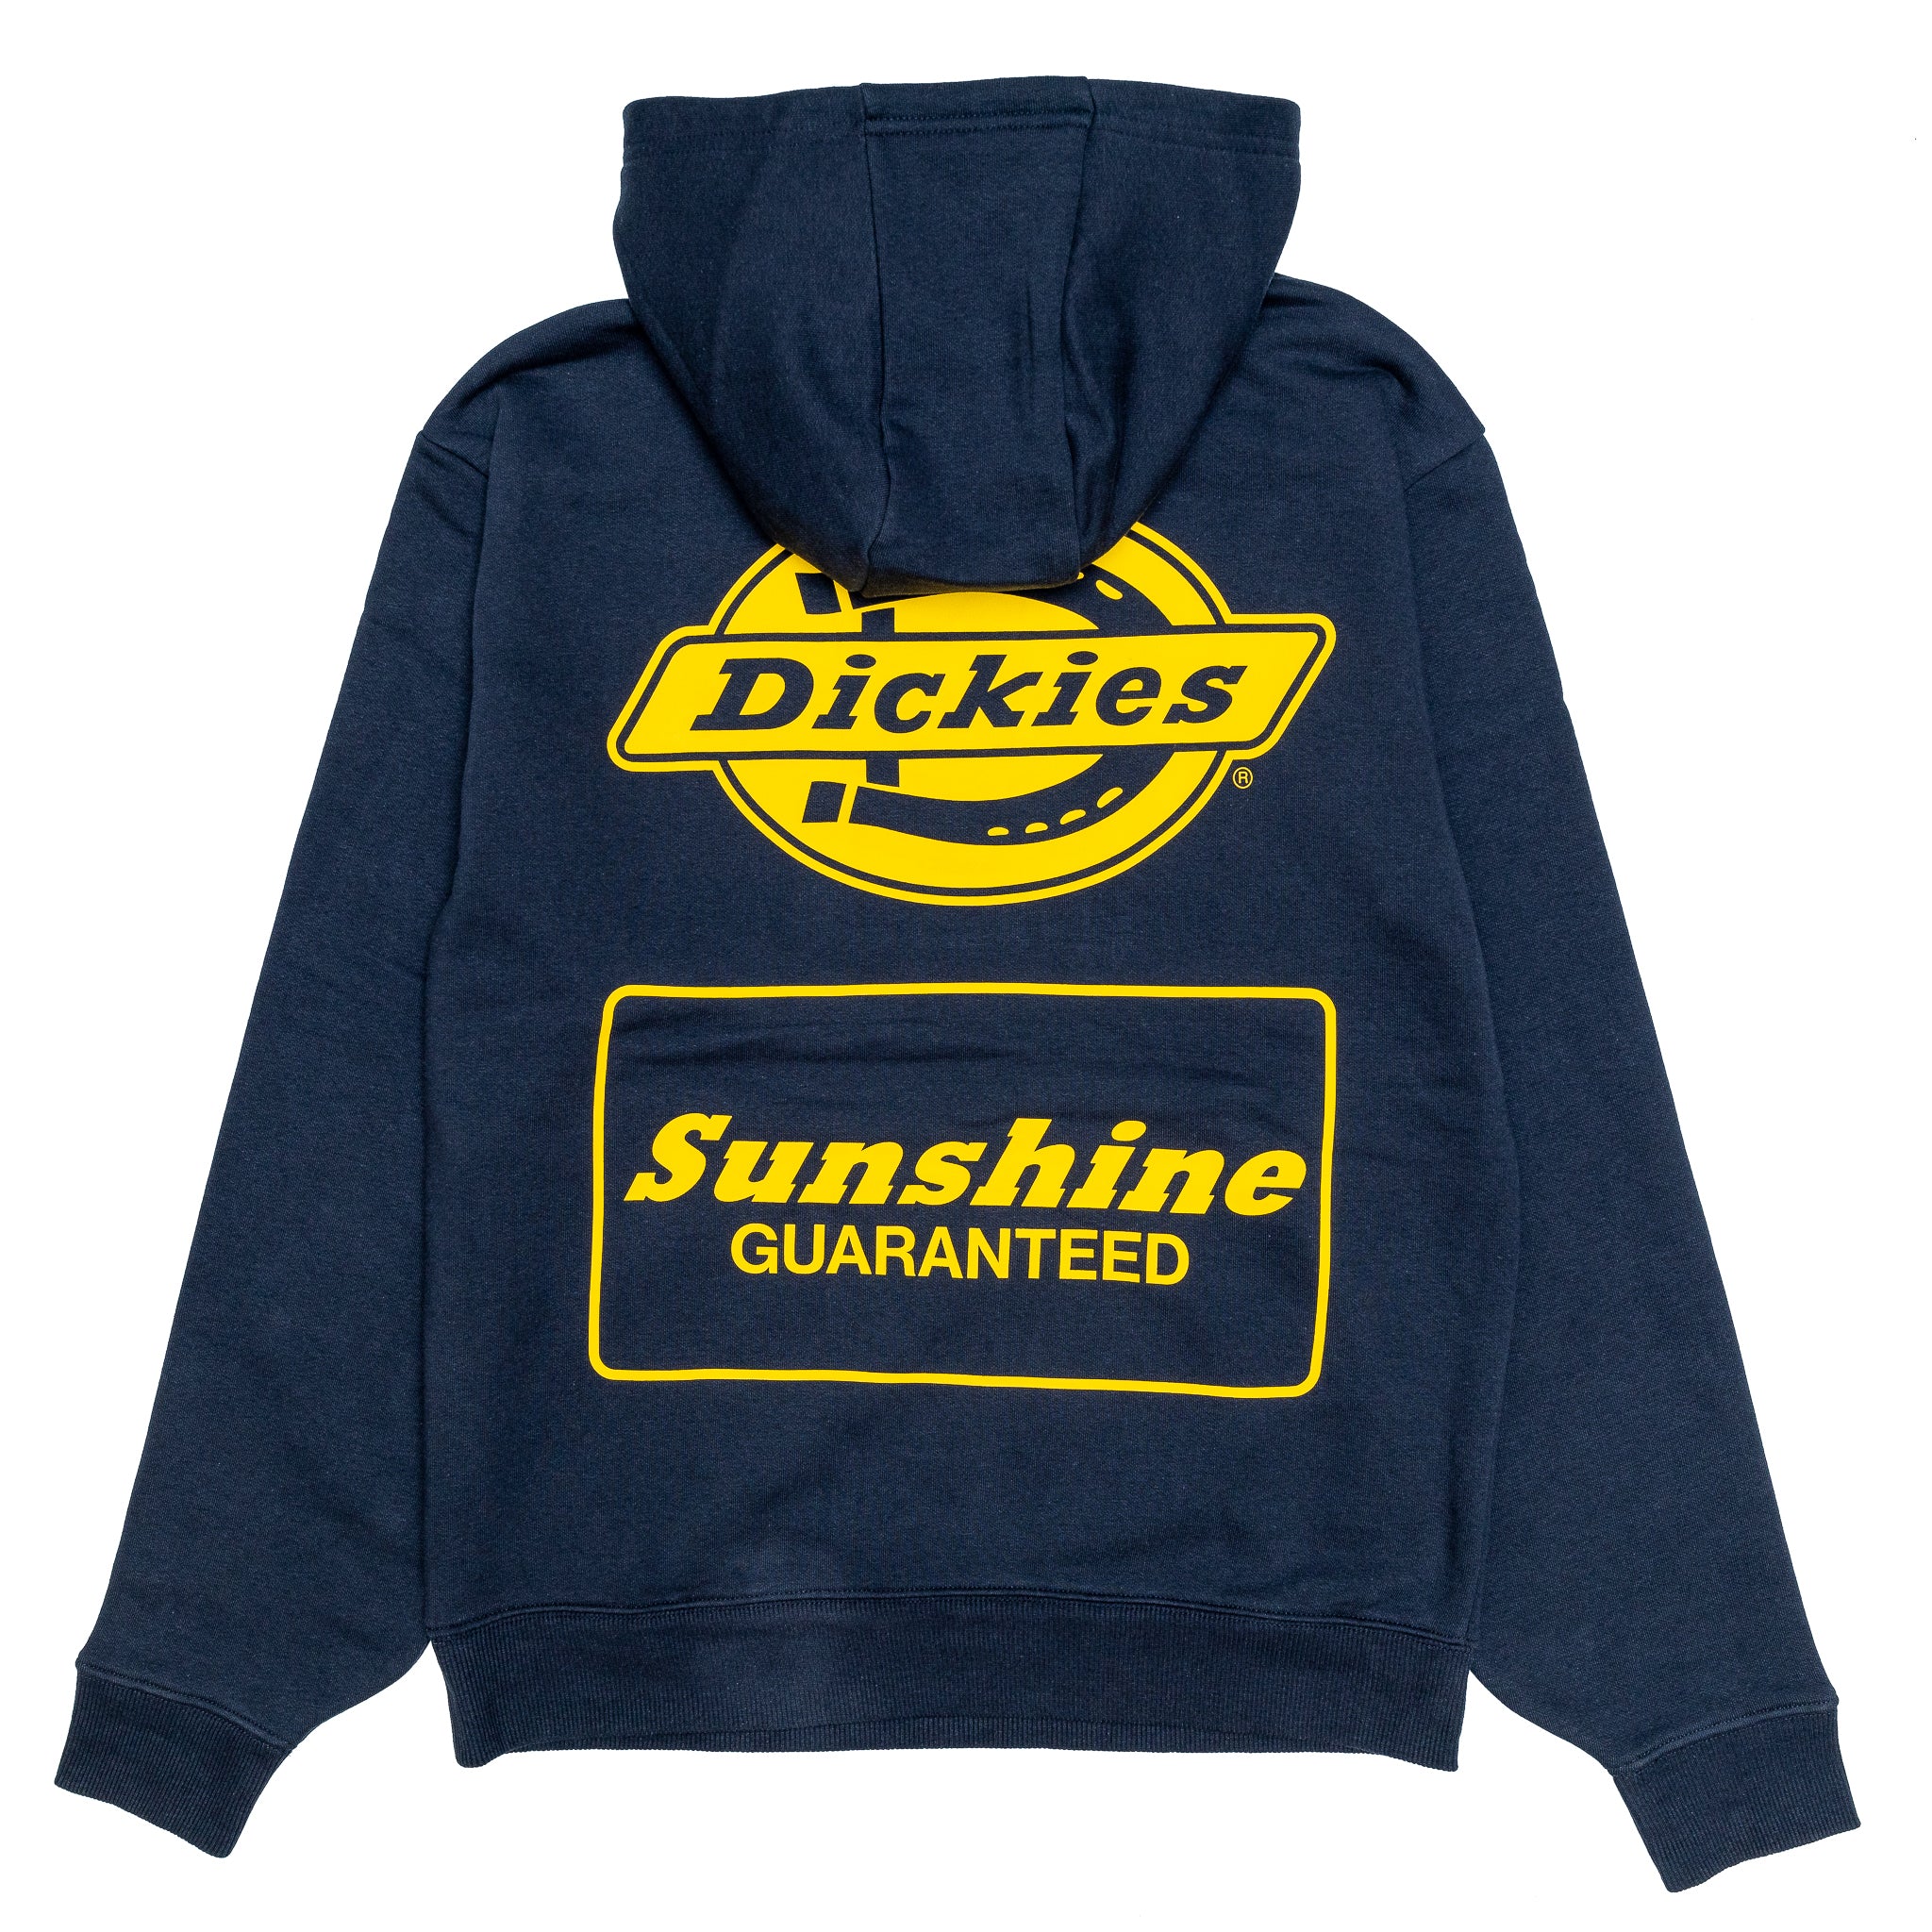 Dickies x New York Sunshine Logo Hoody 'Navy'